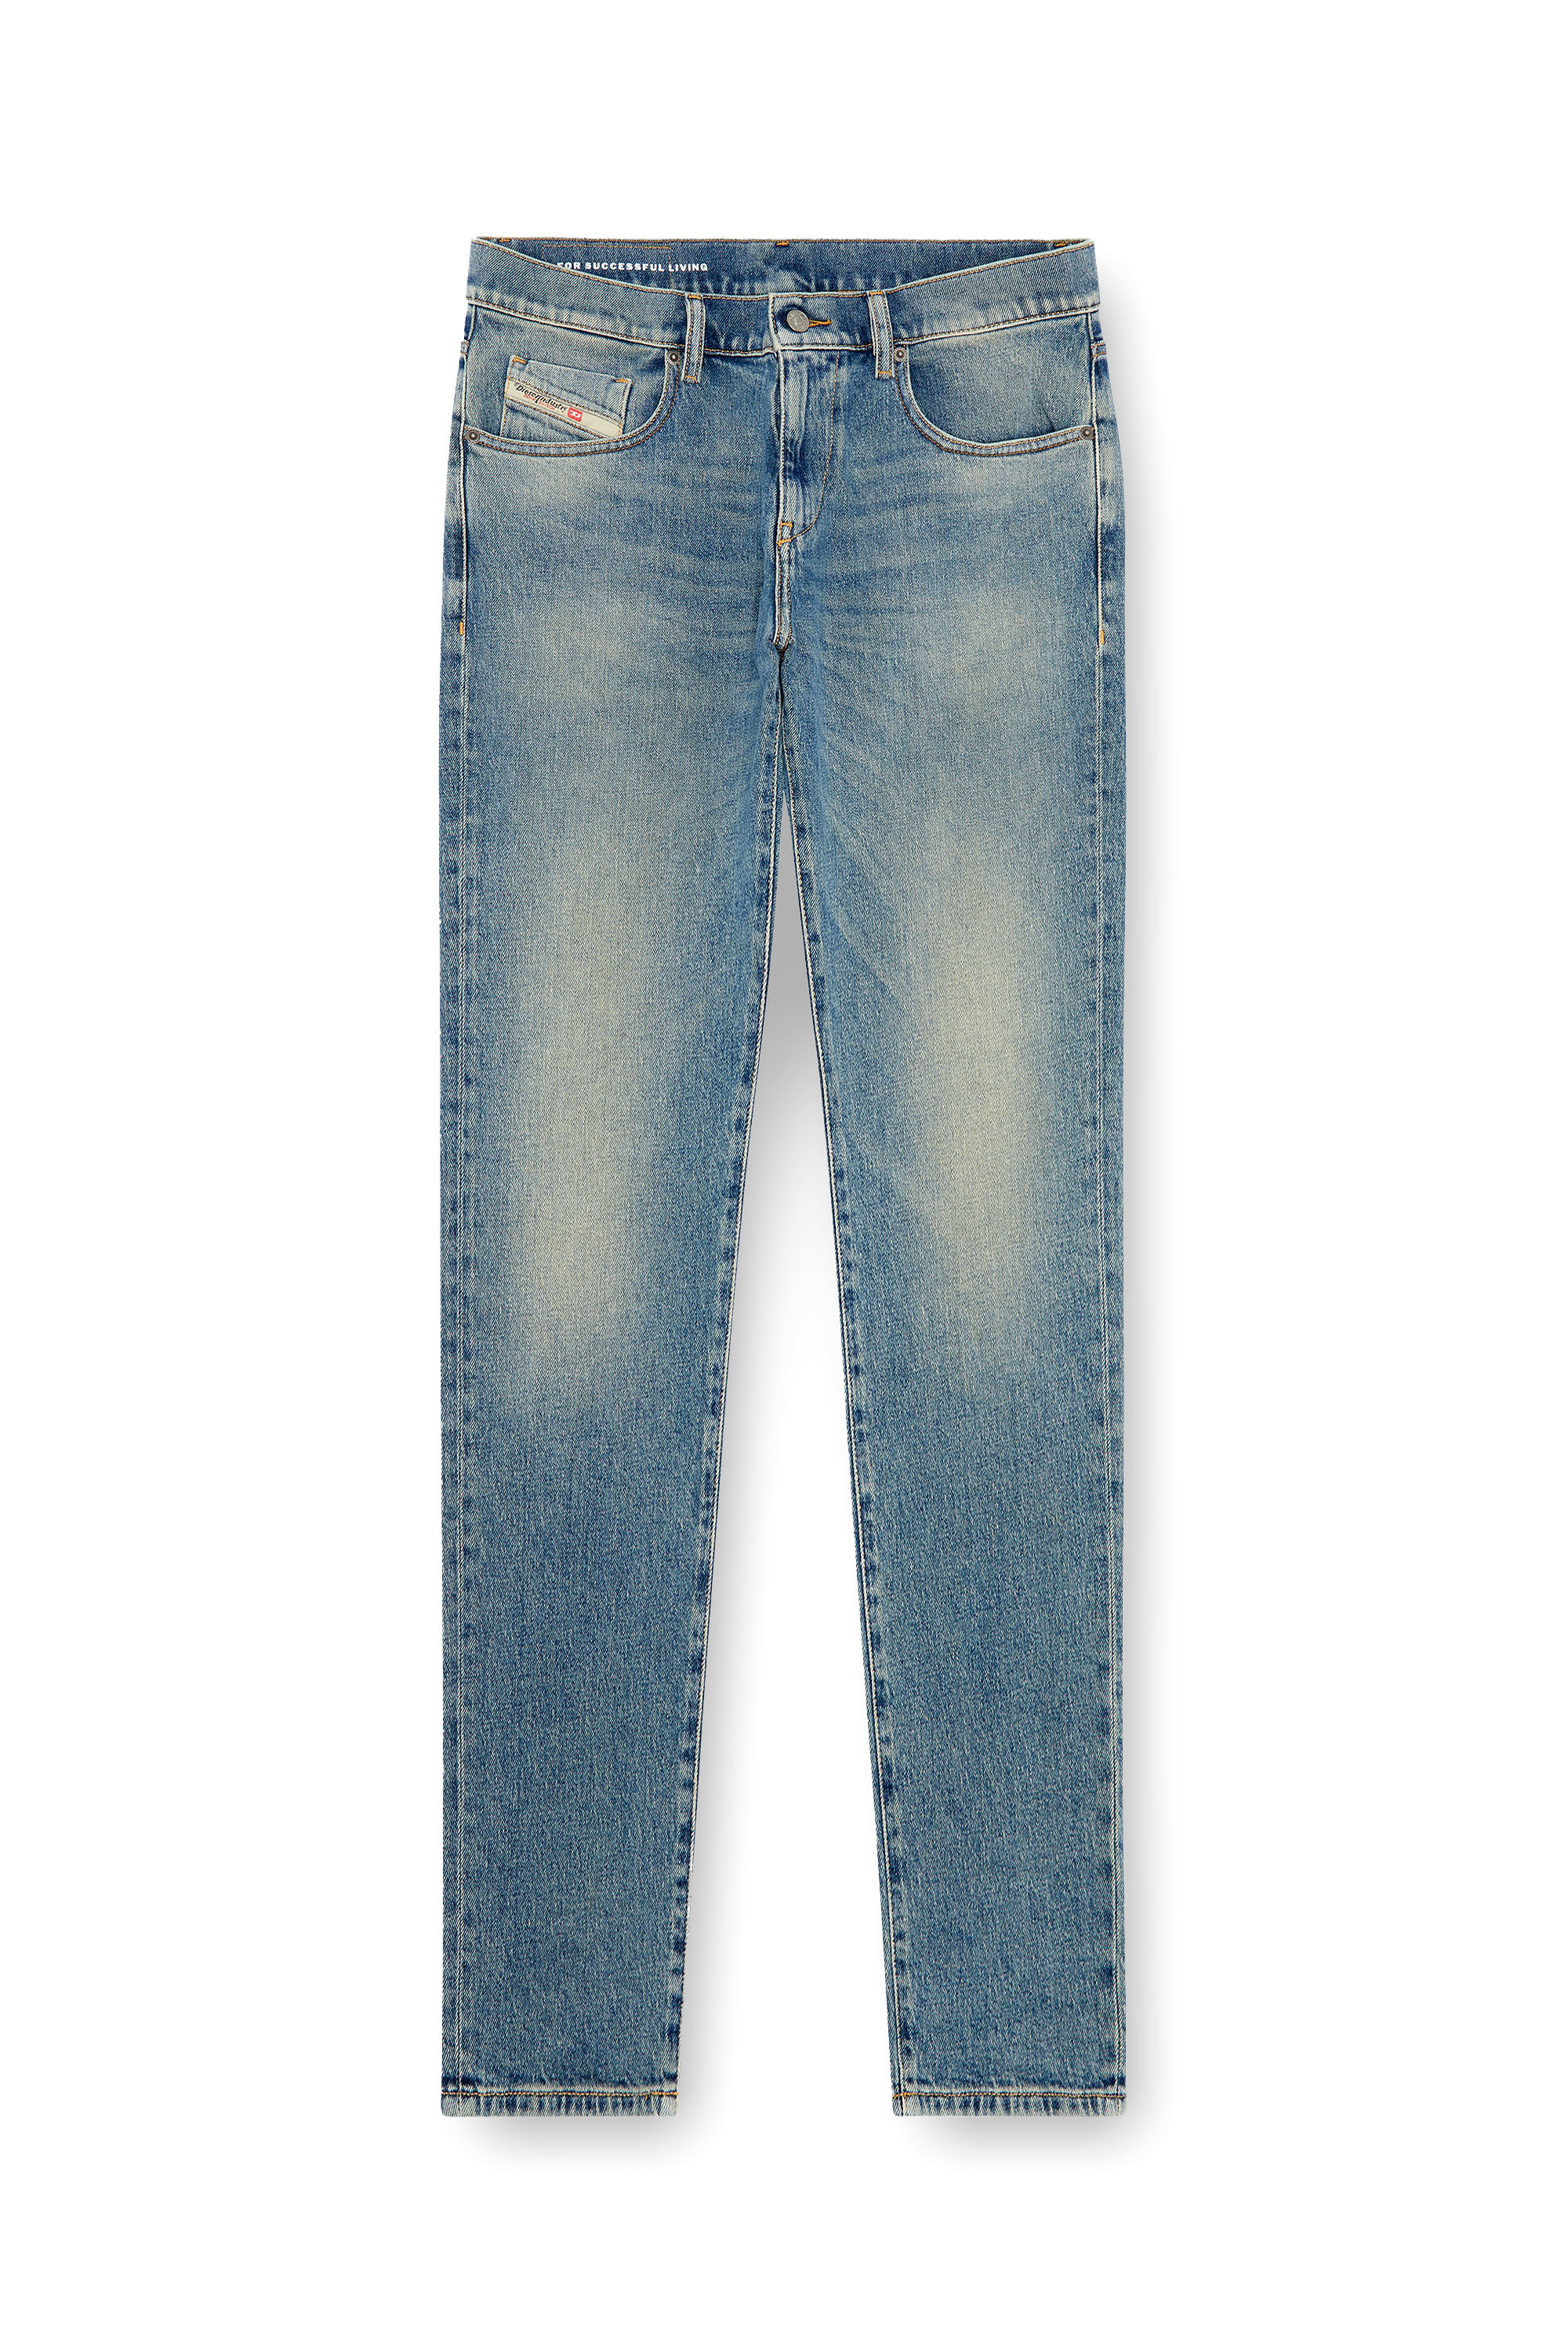 Diesel - Man Slim Jeans 2019 D-Strukt 09J55, Light Blue - Image 3